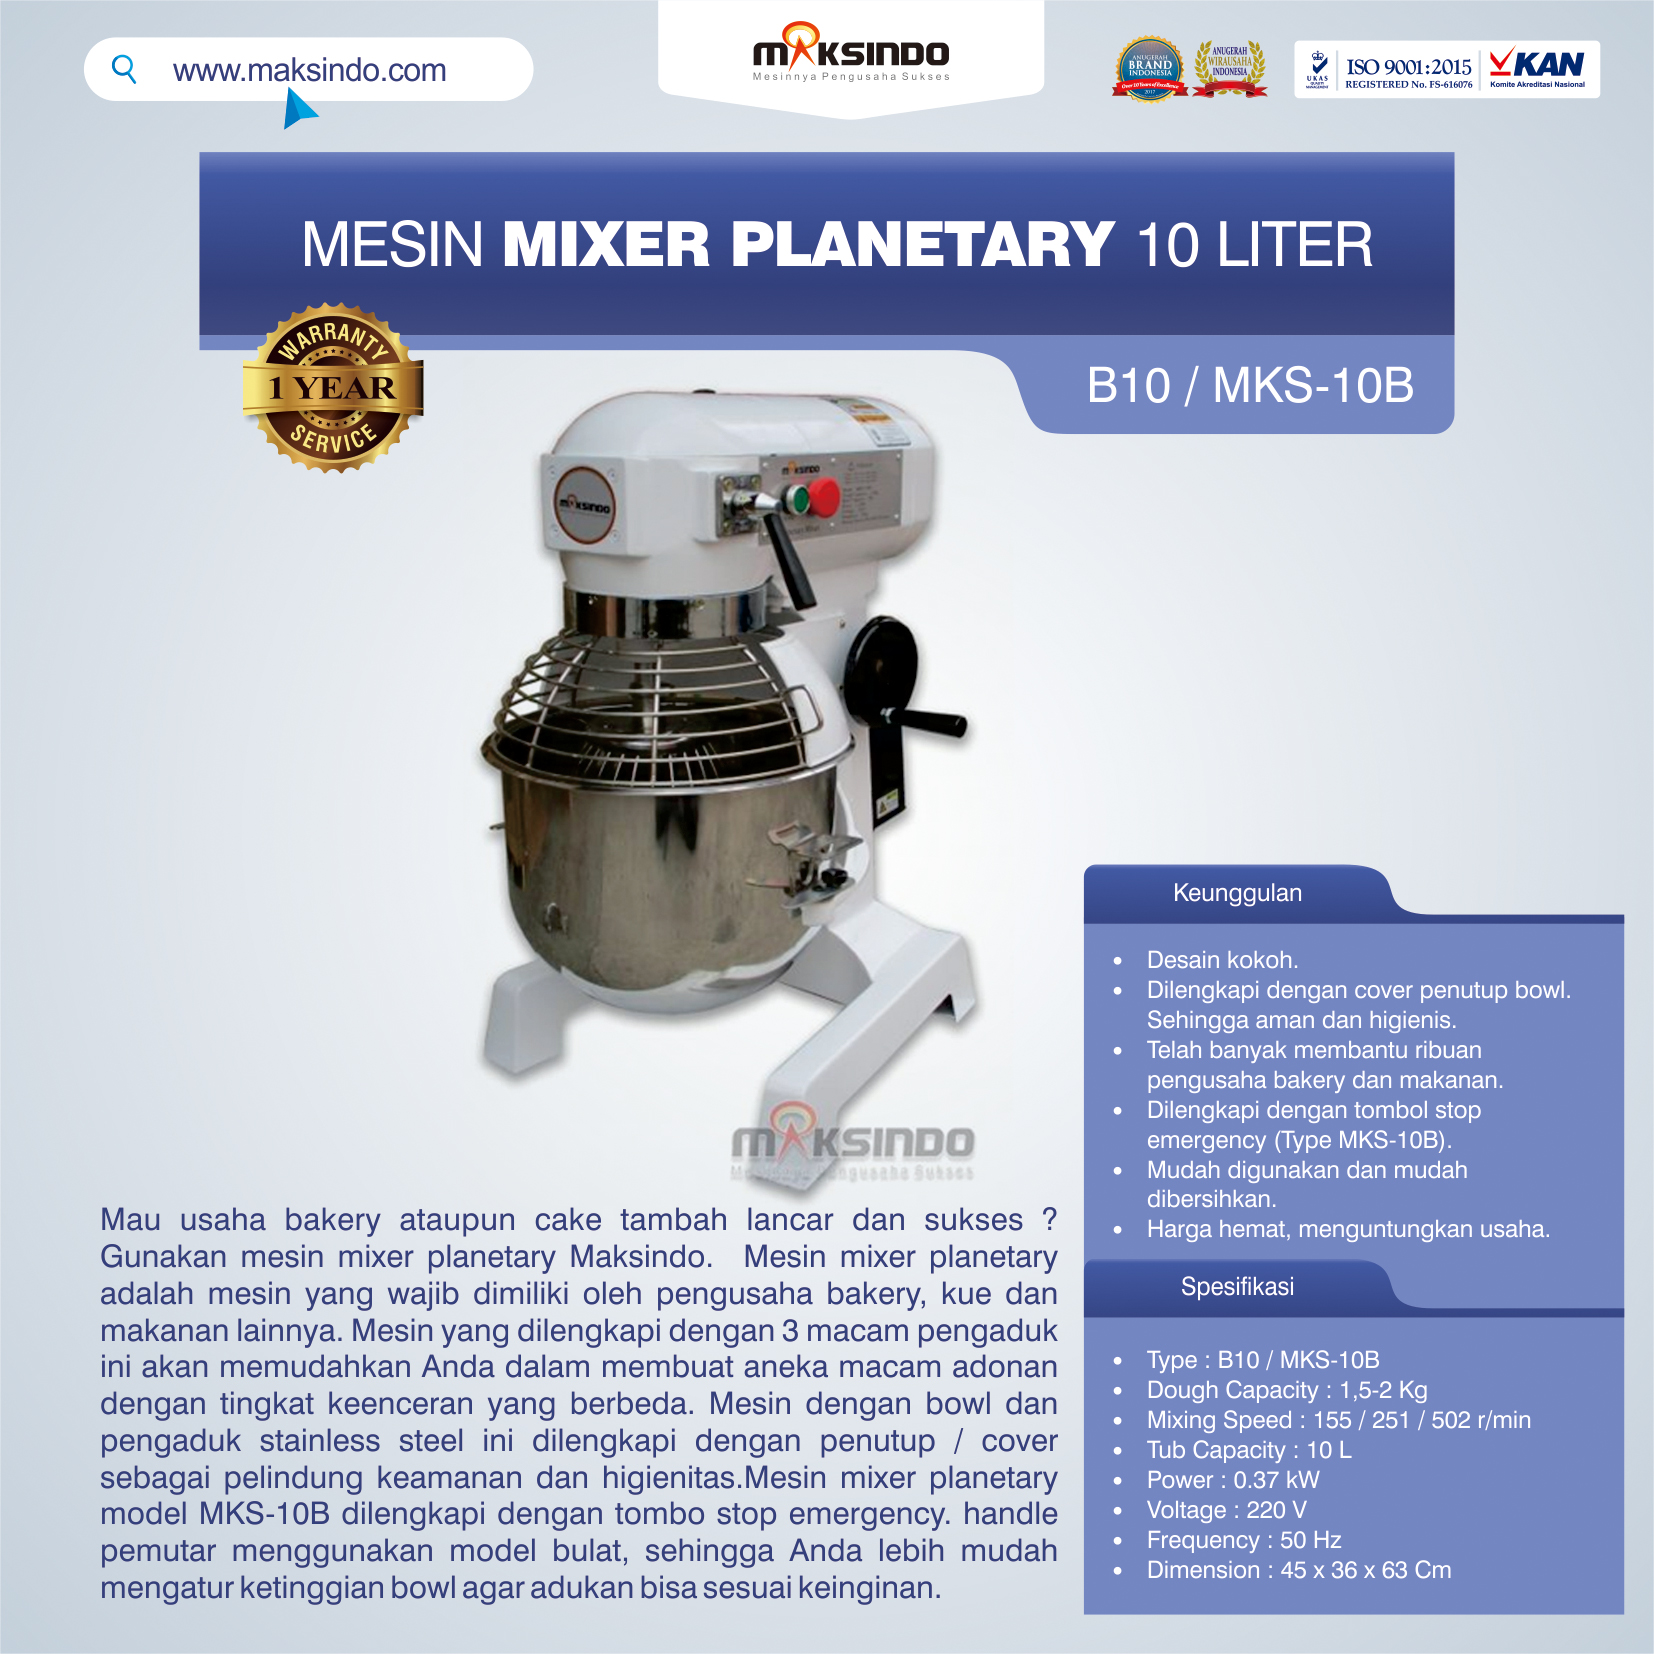 Jual Mesin Mixer Planetary 10 Liter (MKS-10B) di Pekanbaru